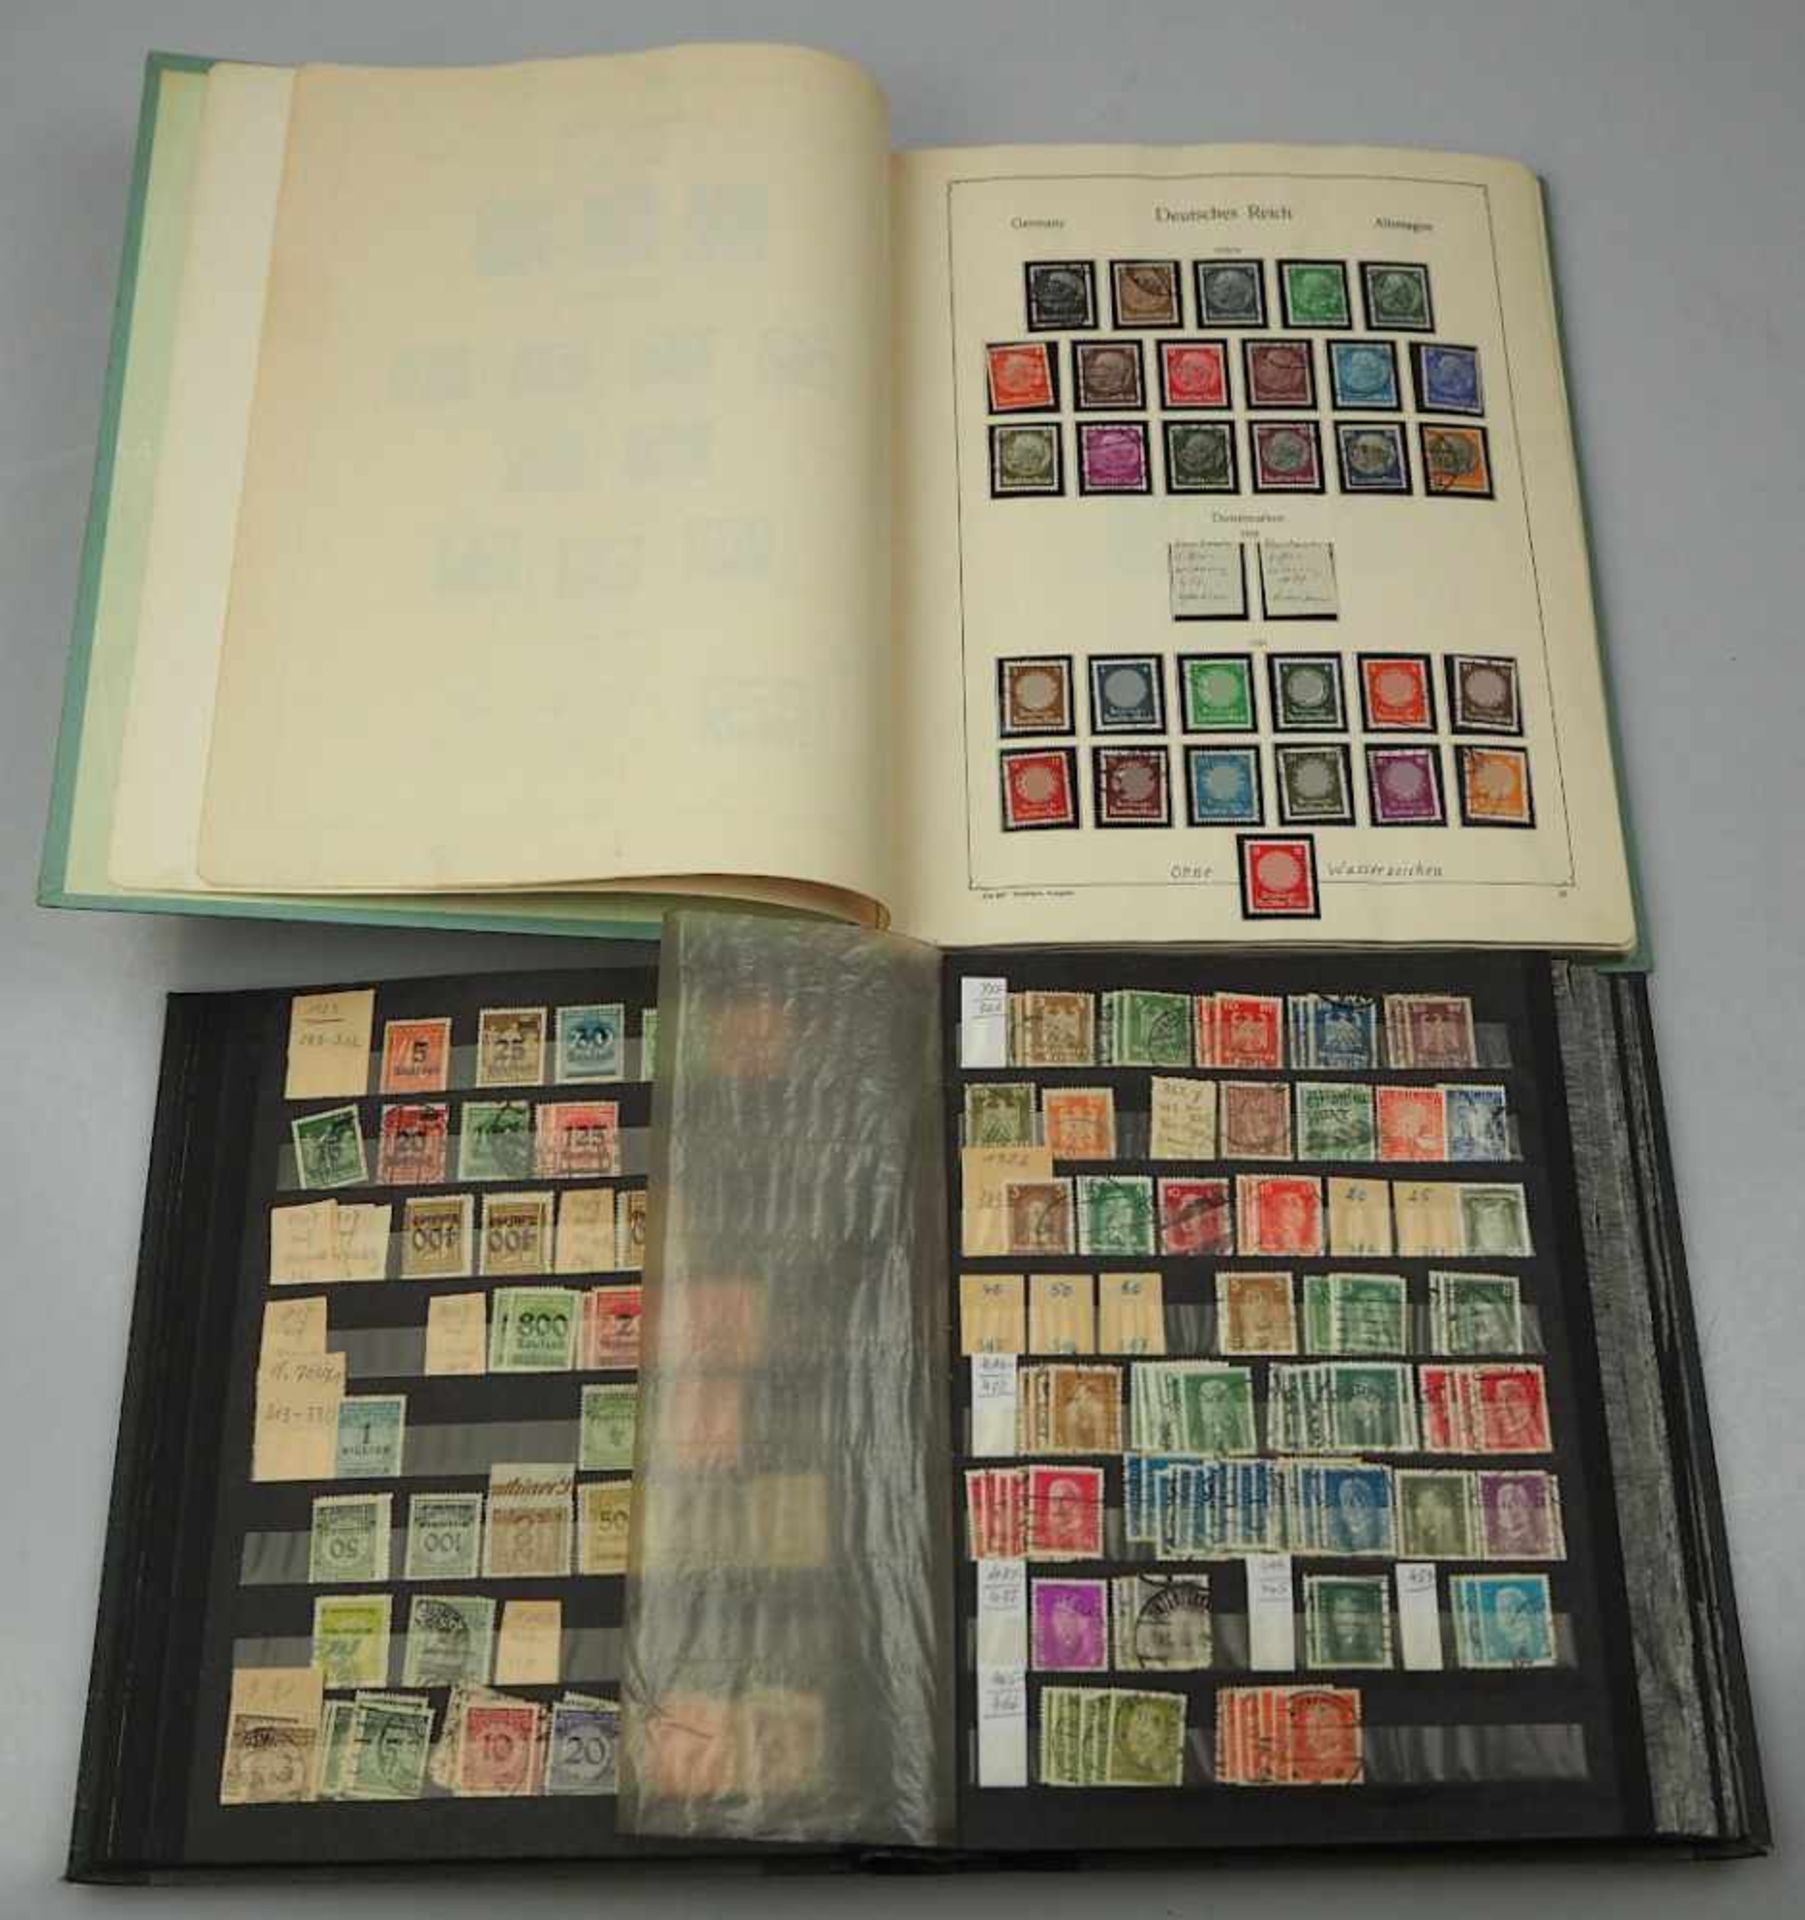 1 Konv. Briefmarken Deutsches Reich, Bayern, Österreich, III. Reich, Berlin, BRD, DDR, Sowjetisc